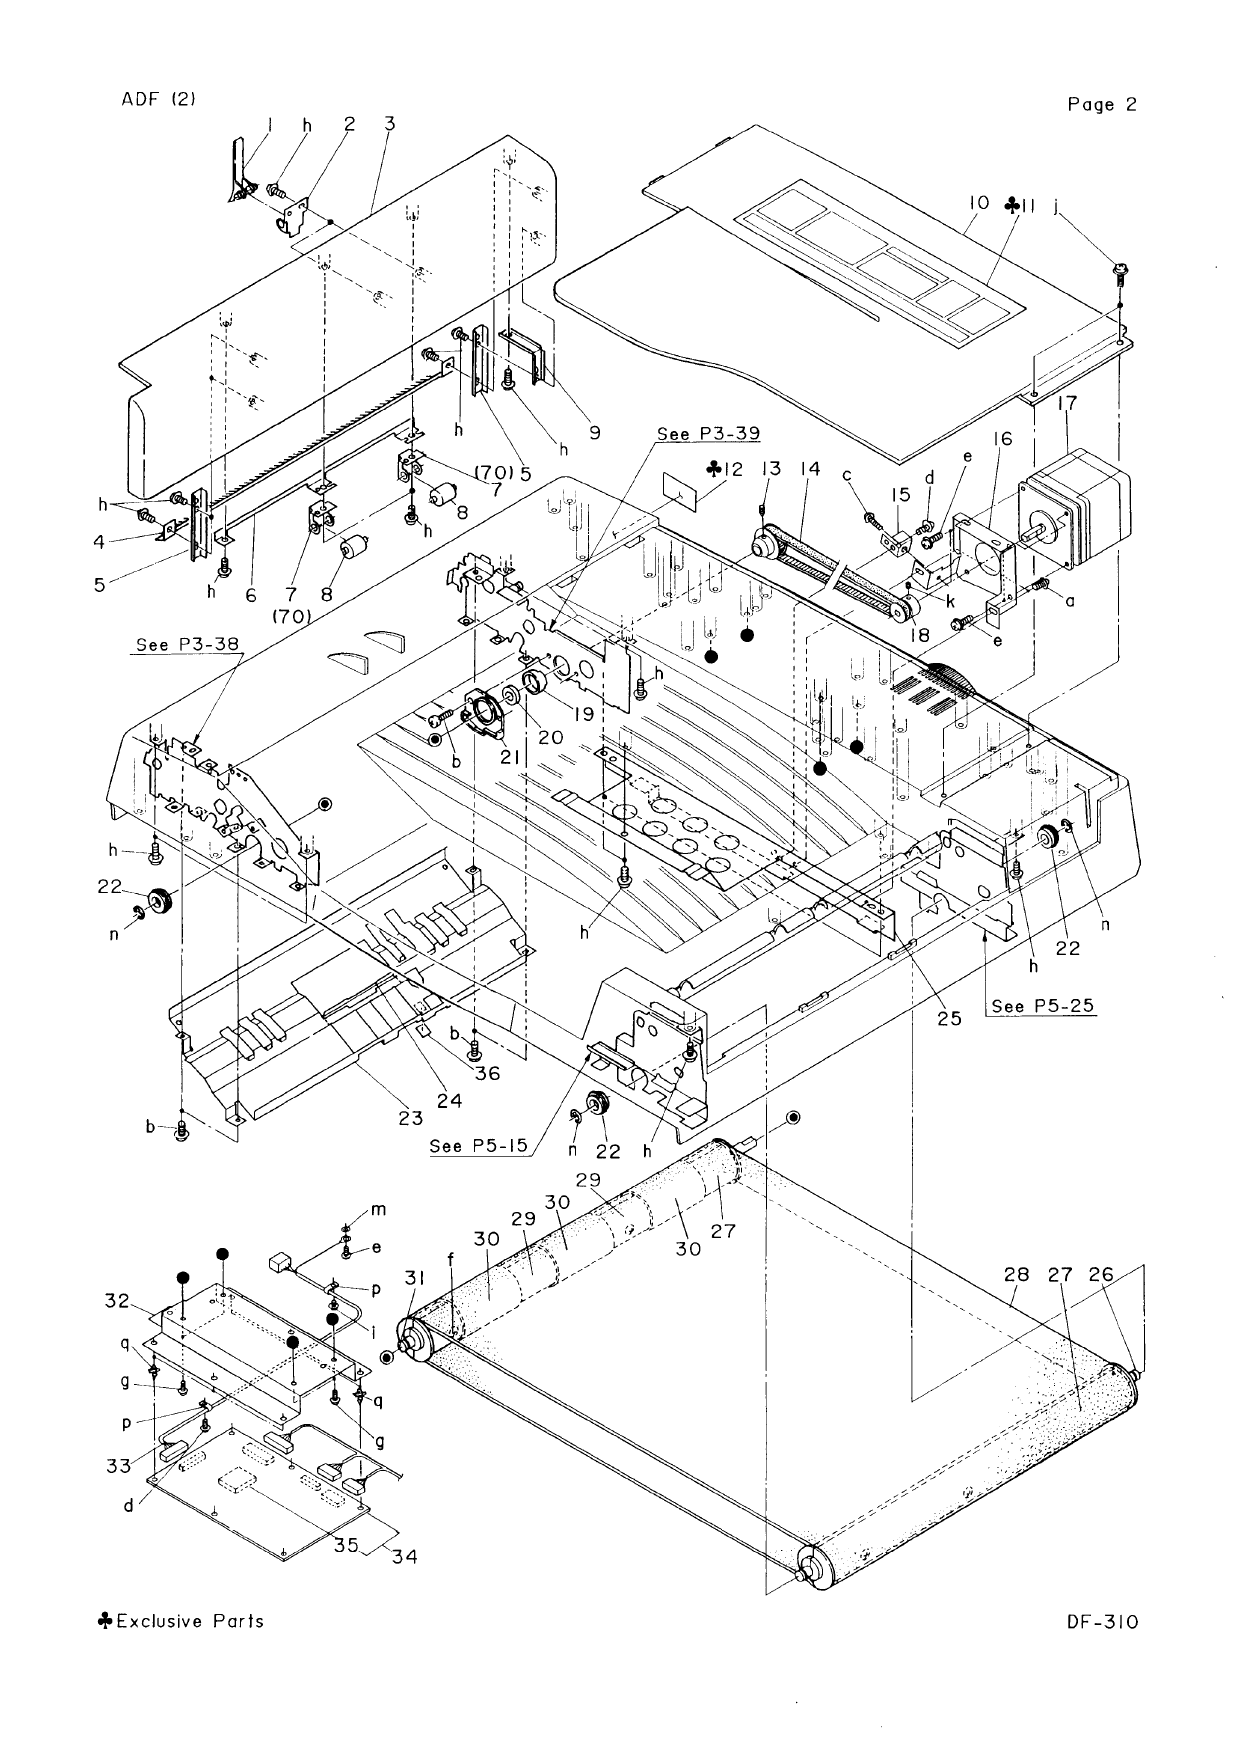 Konica-Minolta Options DF-310 Parts Manual-4